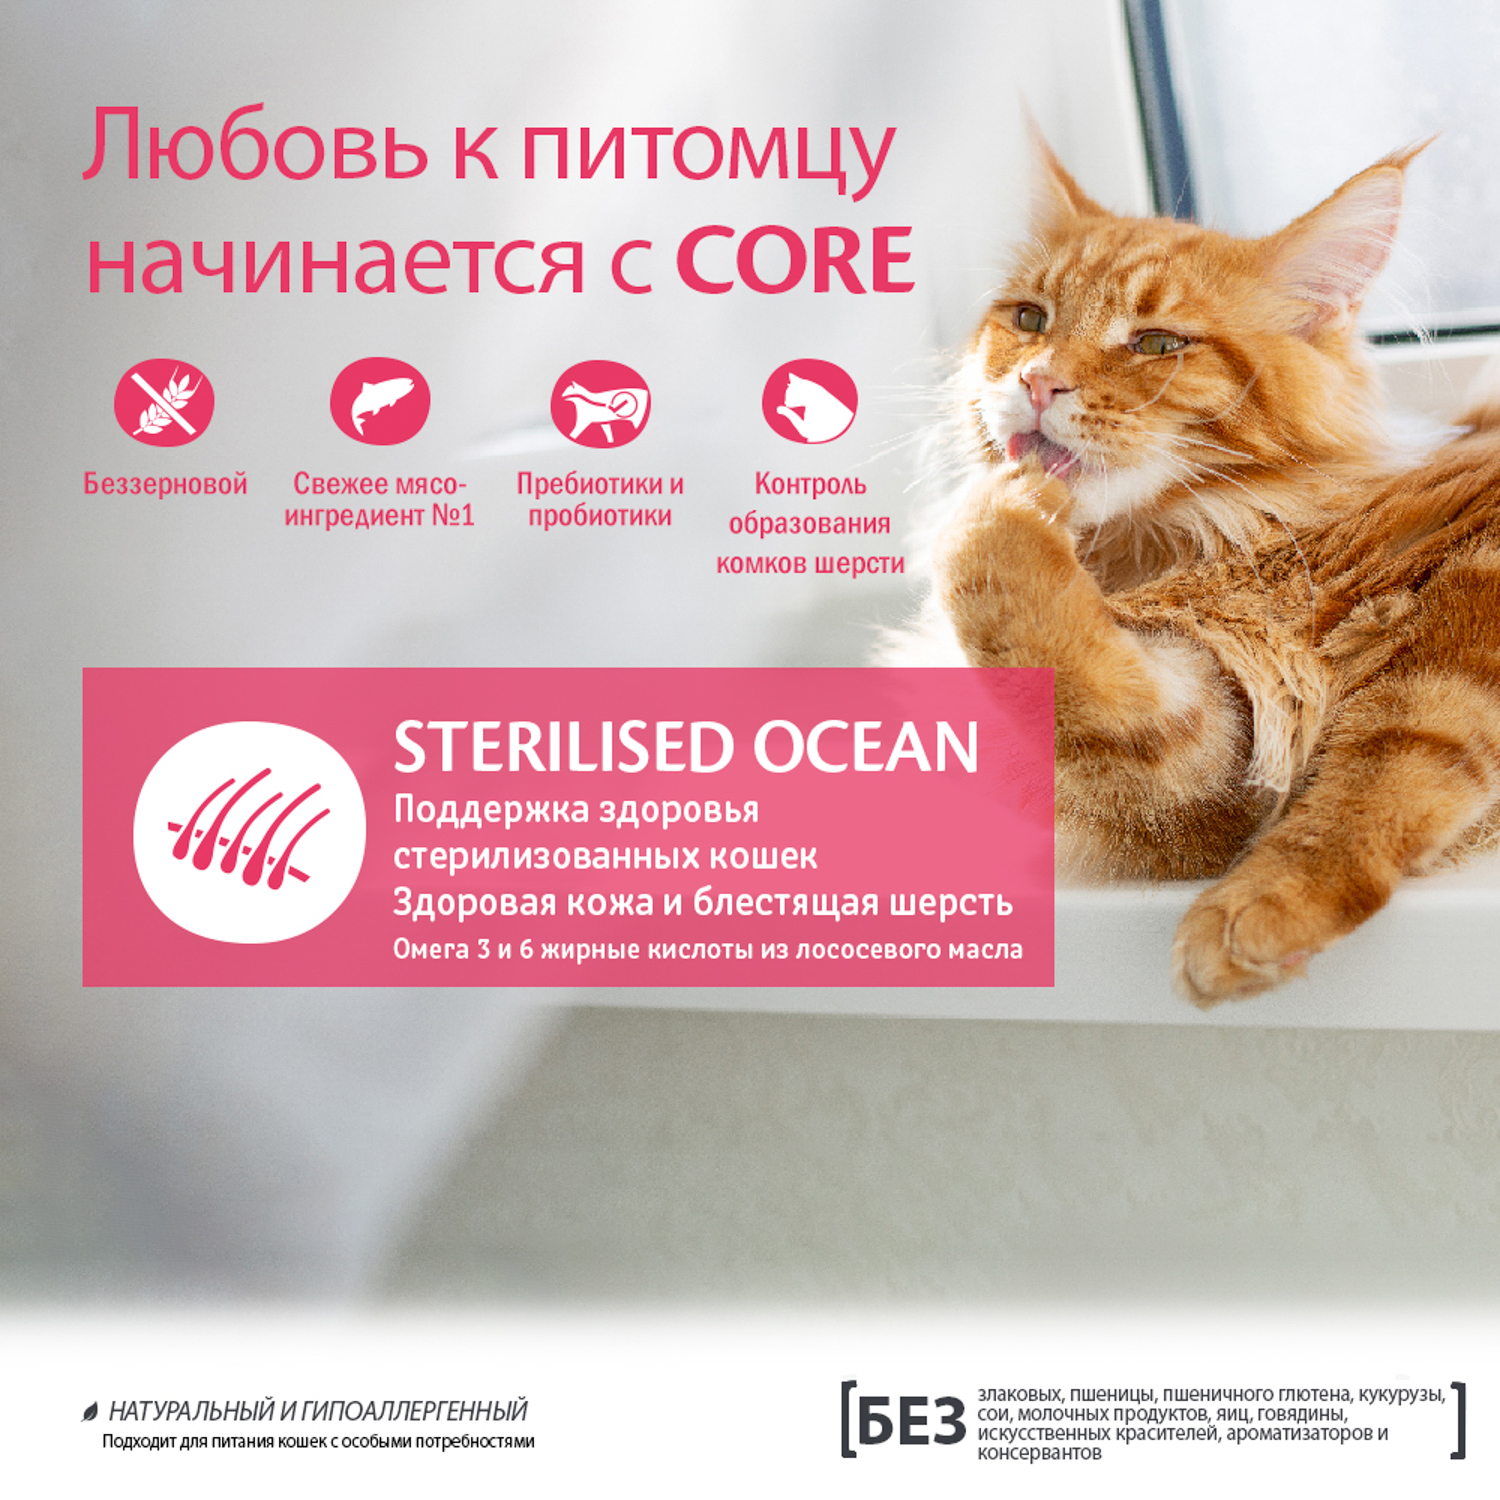 Сухой корм CORE для стерилизованных кошек и кастрированных котов, из лосося 300 г